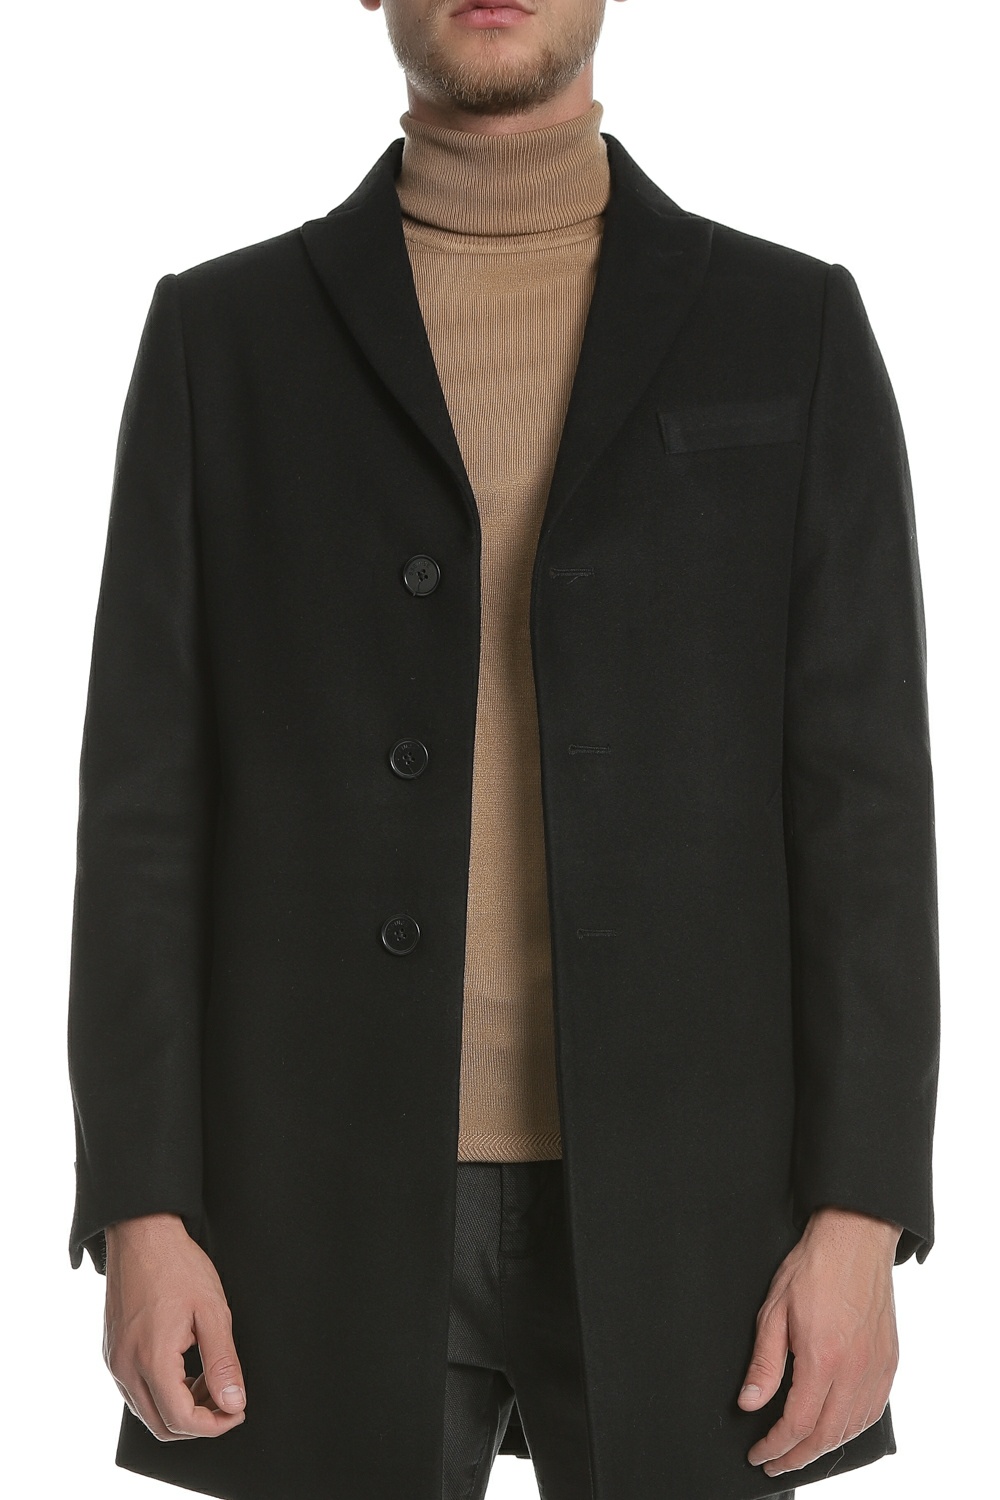 Ανδρικά/Ρούχα/Πανωφόρια/Παλτό SSEINSE - Ανδρικό παλτό SSEINSE μαύρο